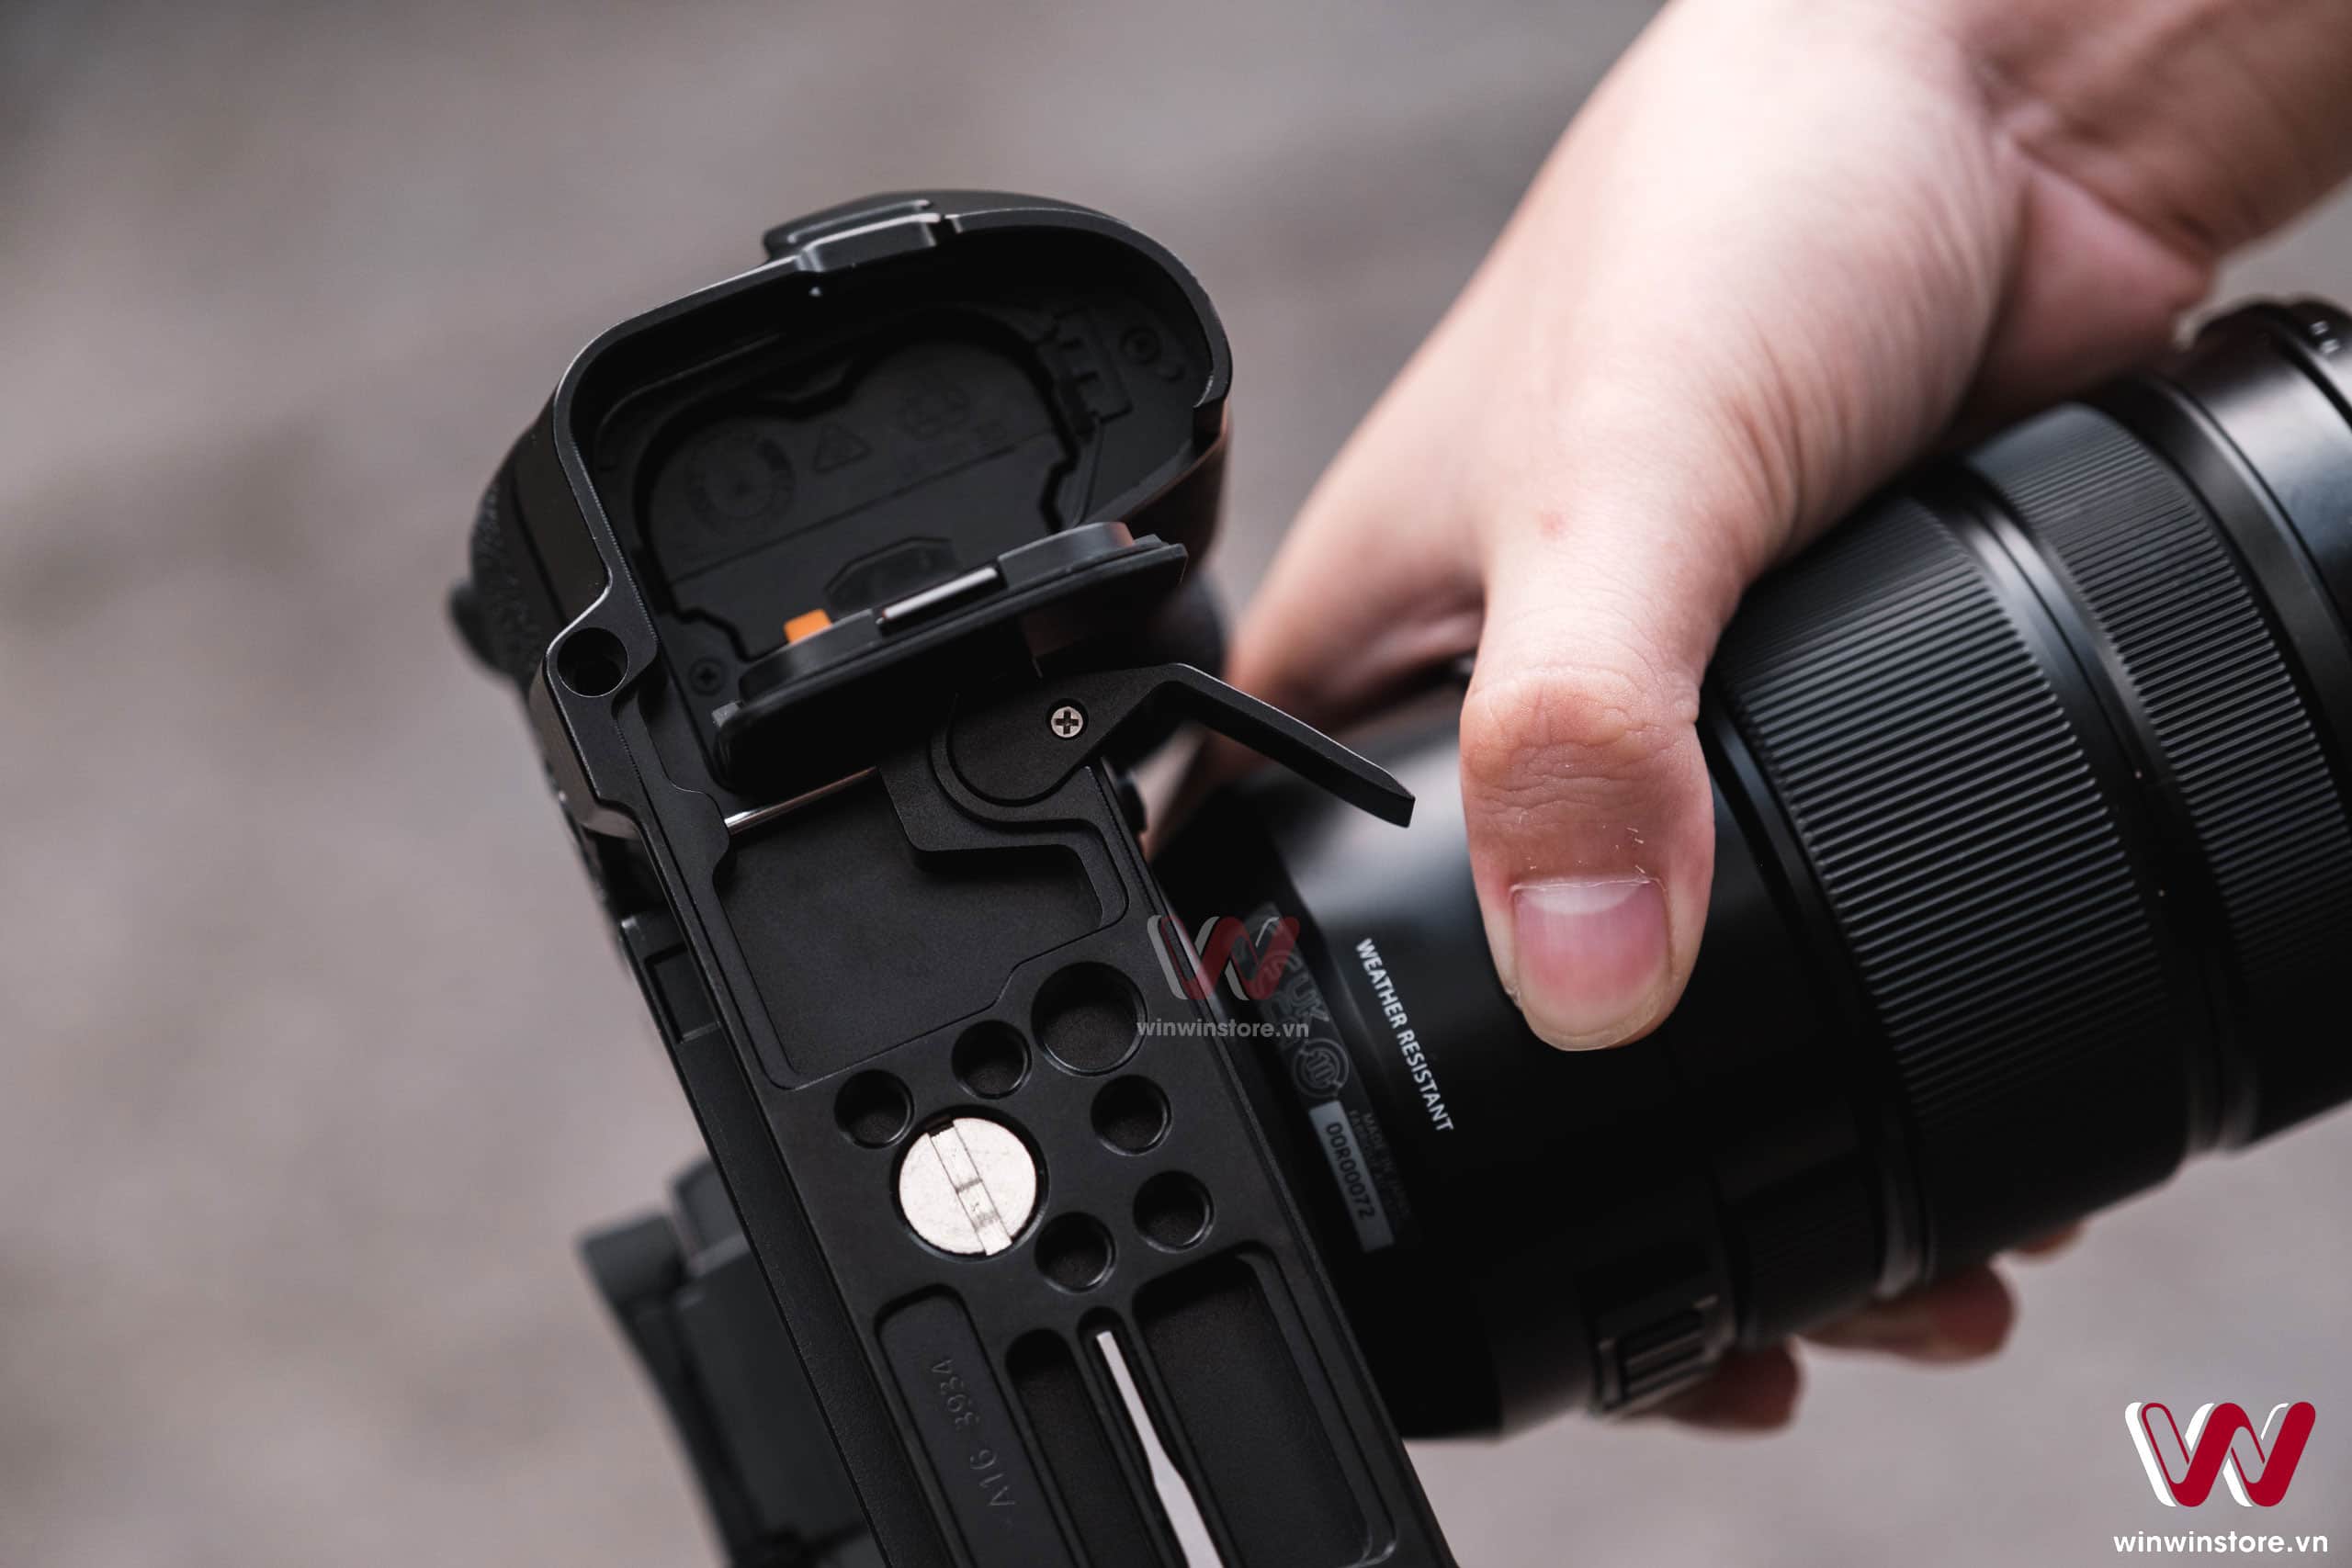 Trên tay khung SmallRig dành cho máy ảnh X-H2s, vừa khít và hoàn thiện cứng cáp với nhiều lỗ ốc cho phụ kiện